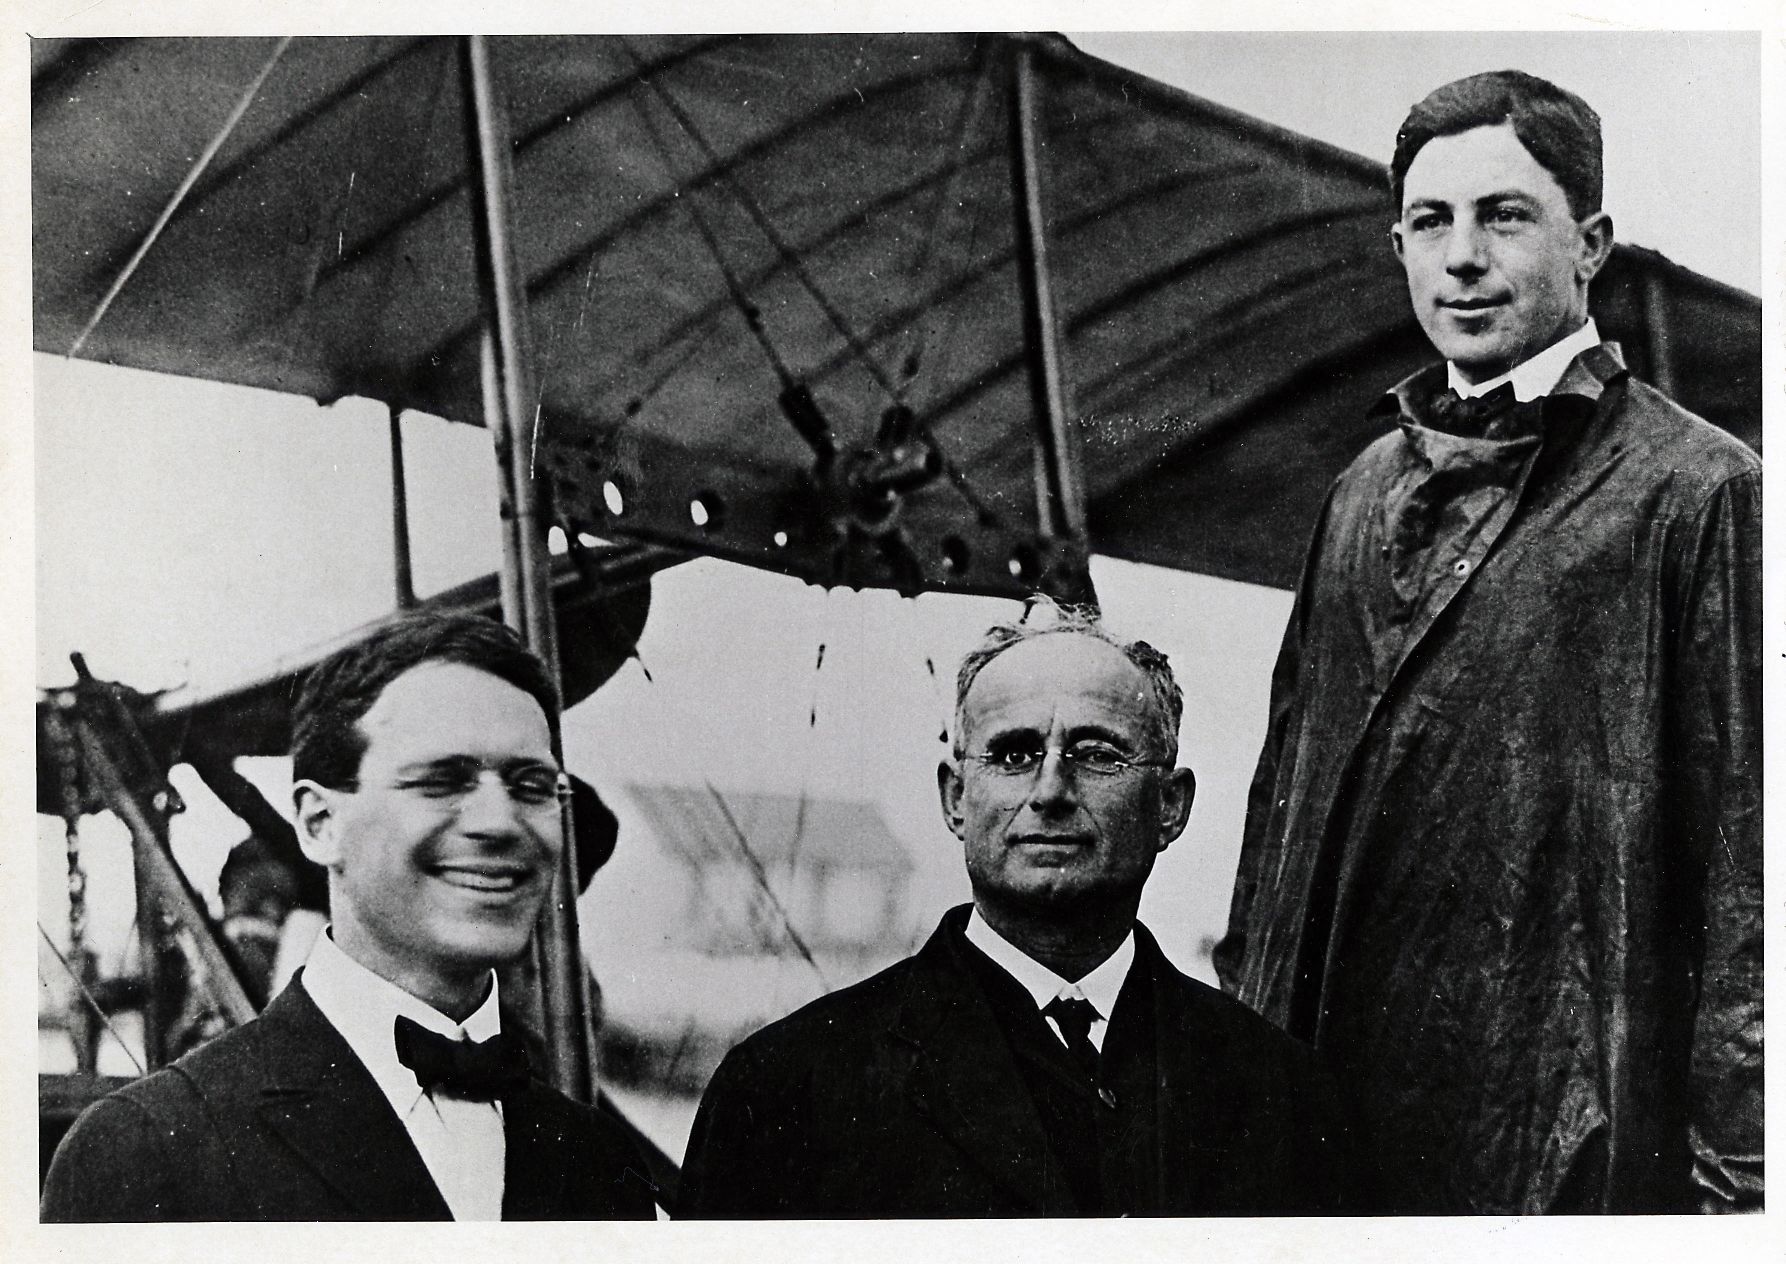 Csoportkép start előtt: baloldalt Fansler, a bátor üzletemberek egyike, jobbra Jannus, a bátor pilóta, középen Pheil, a bátor utas